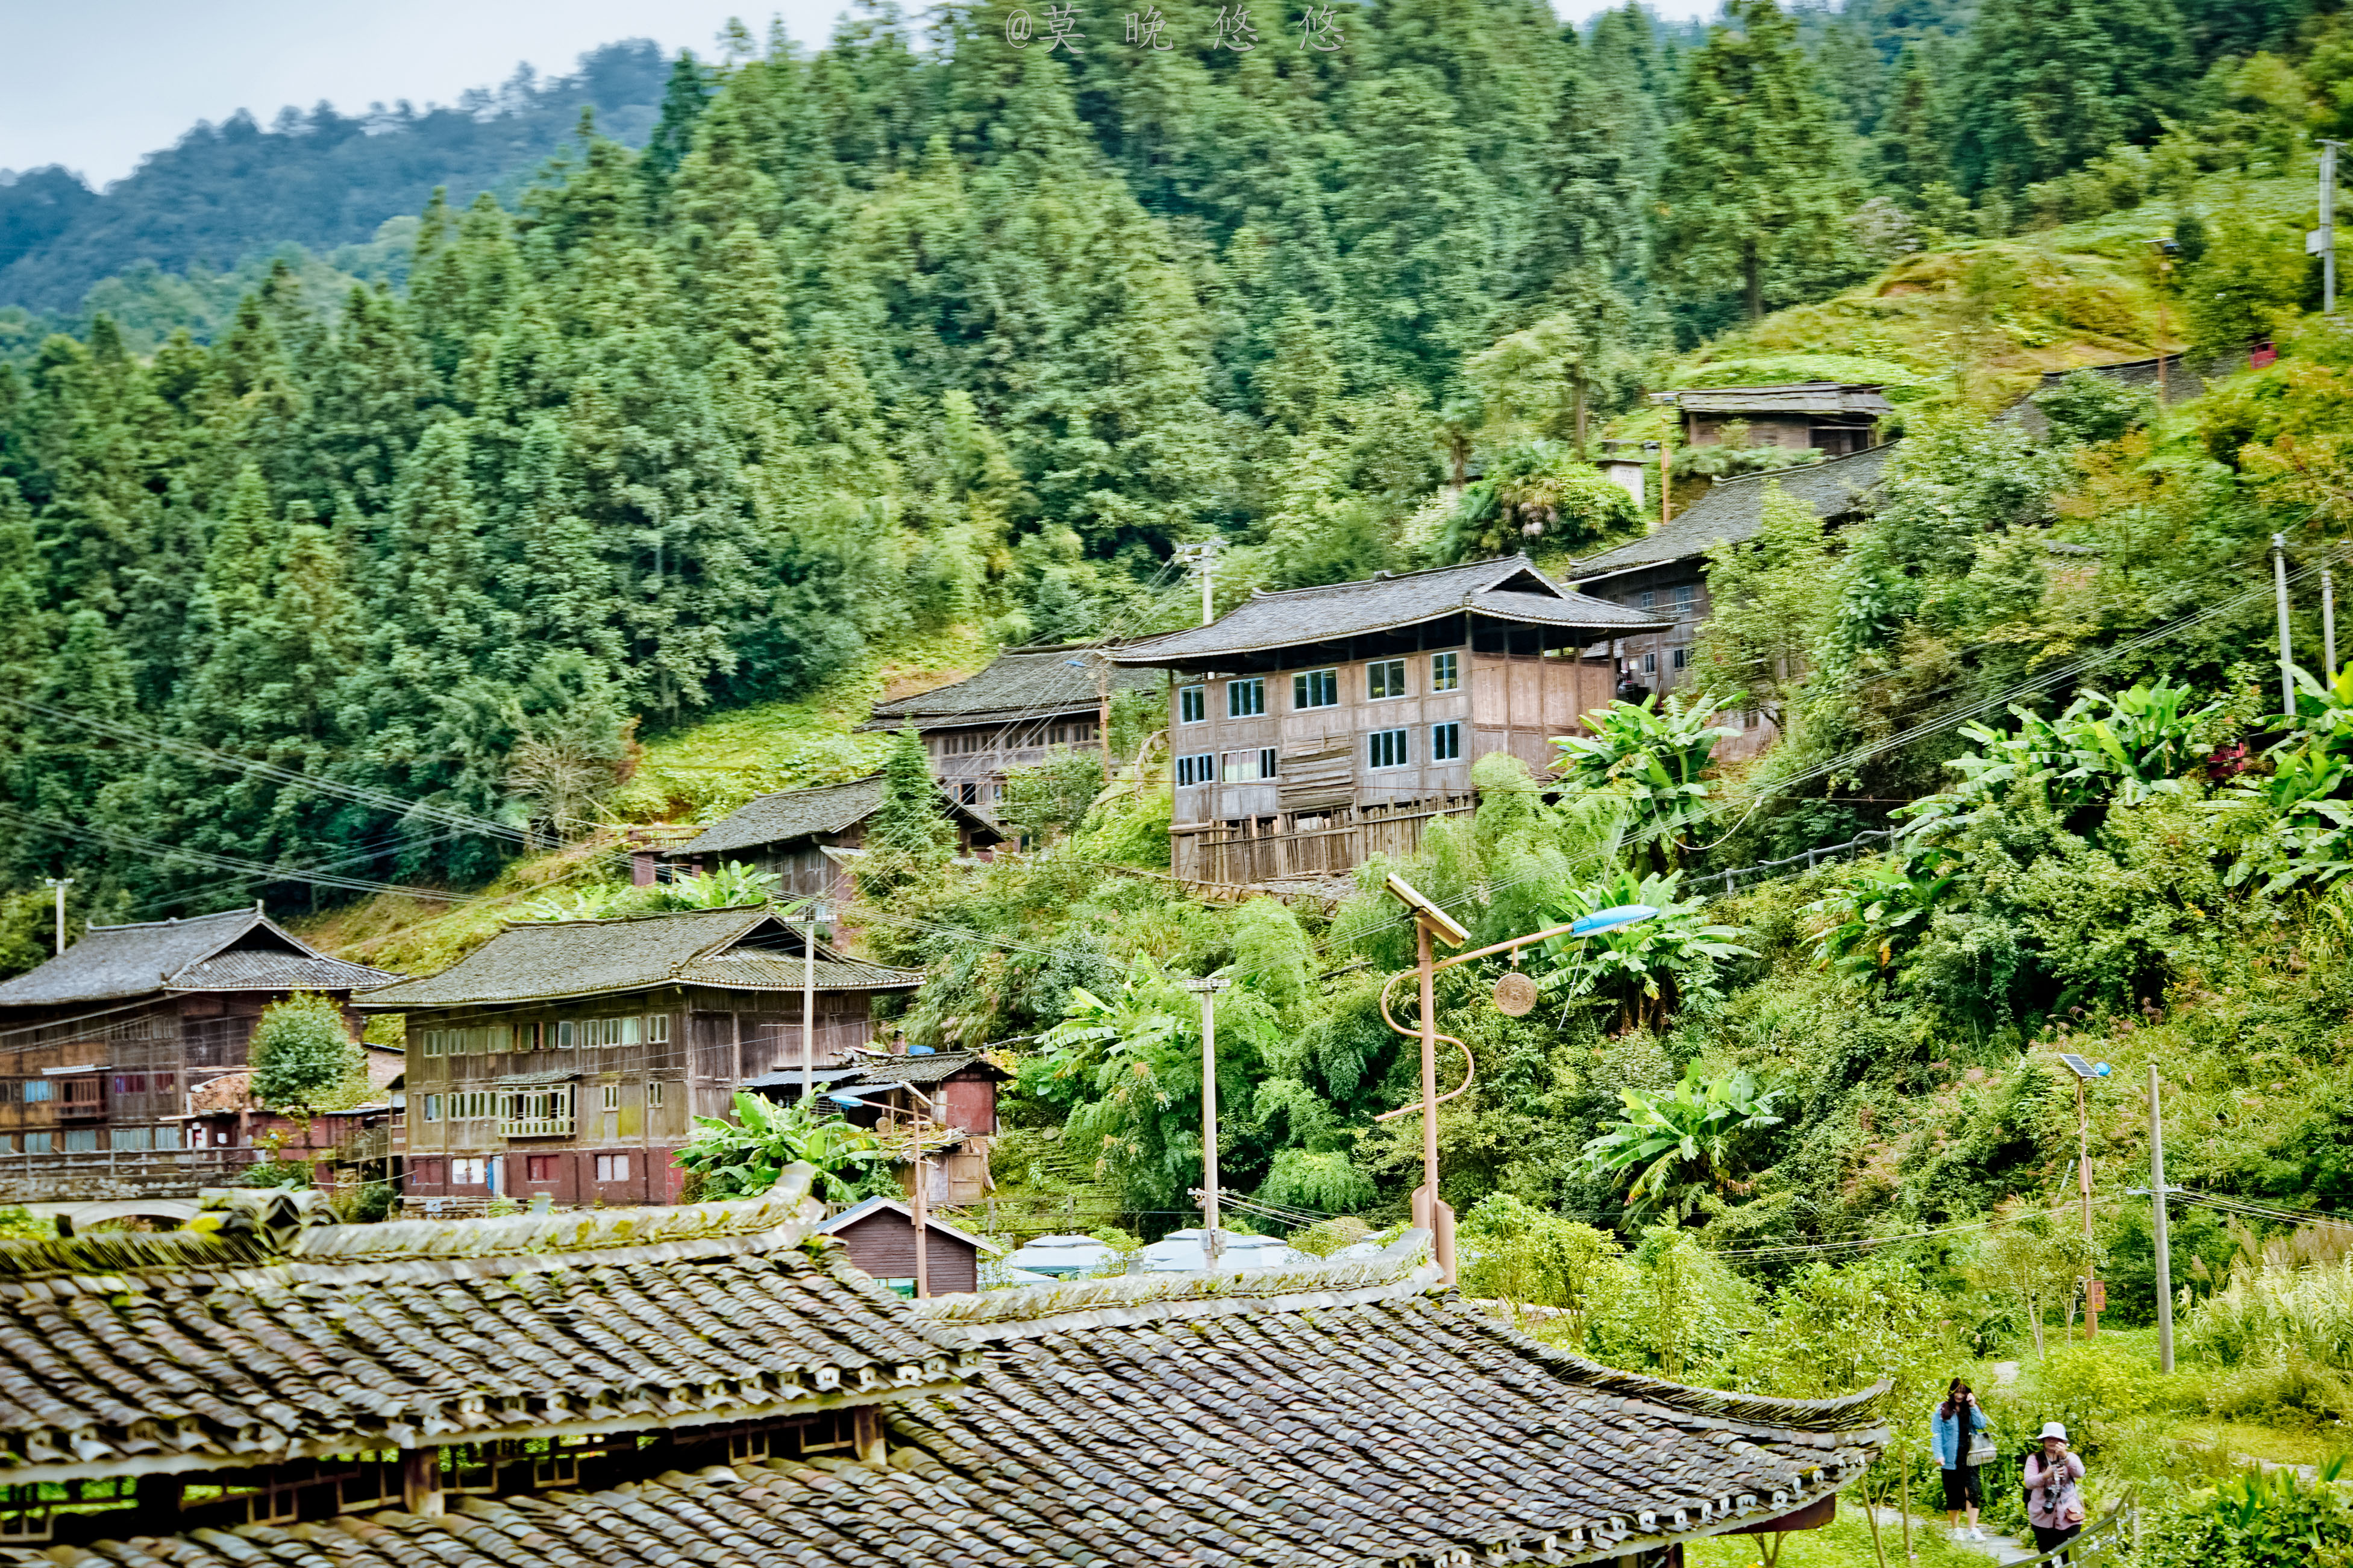 隐藏在贵州深山里的小村寨,像世外桃源般,有着让人向往的生活